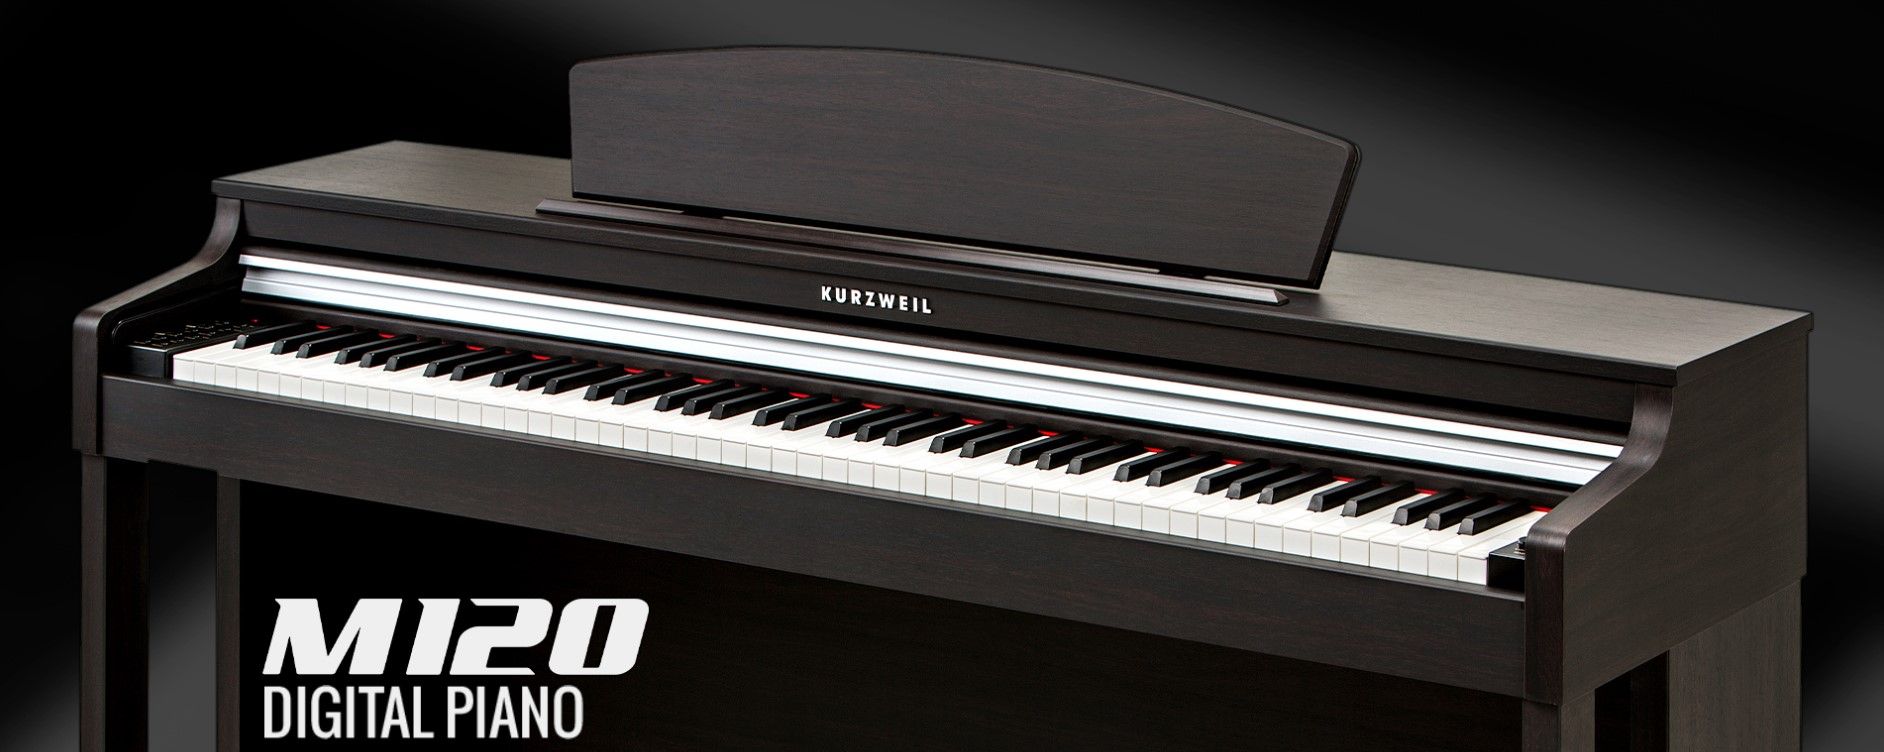  digitális zongora kurzweil M70 wh fejhallgató csatlakozó kiváló ár/minőség arány könnyen kezelhető usb port midi automatikus kísérőprogramok